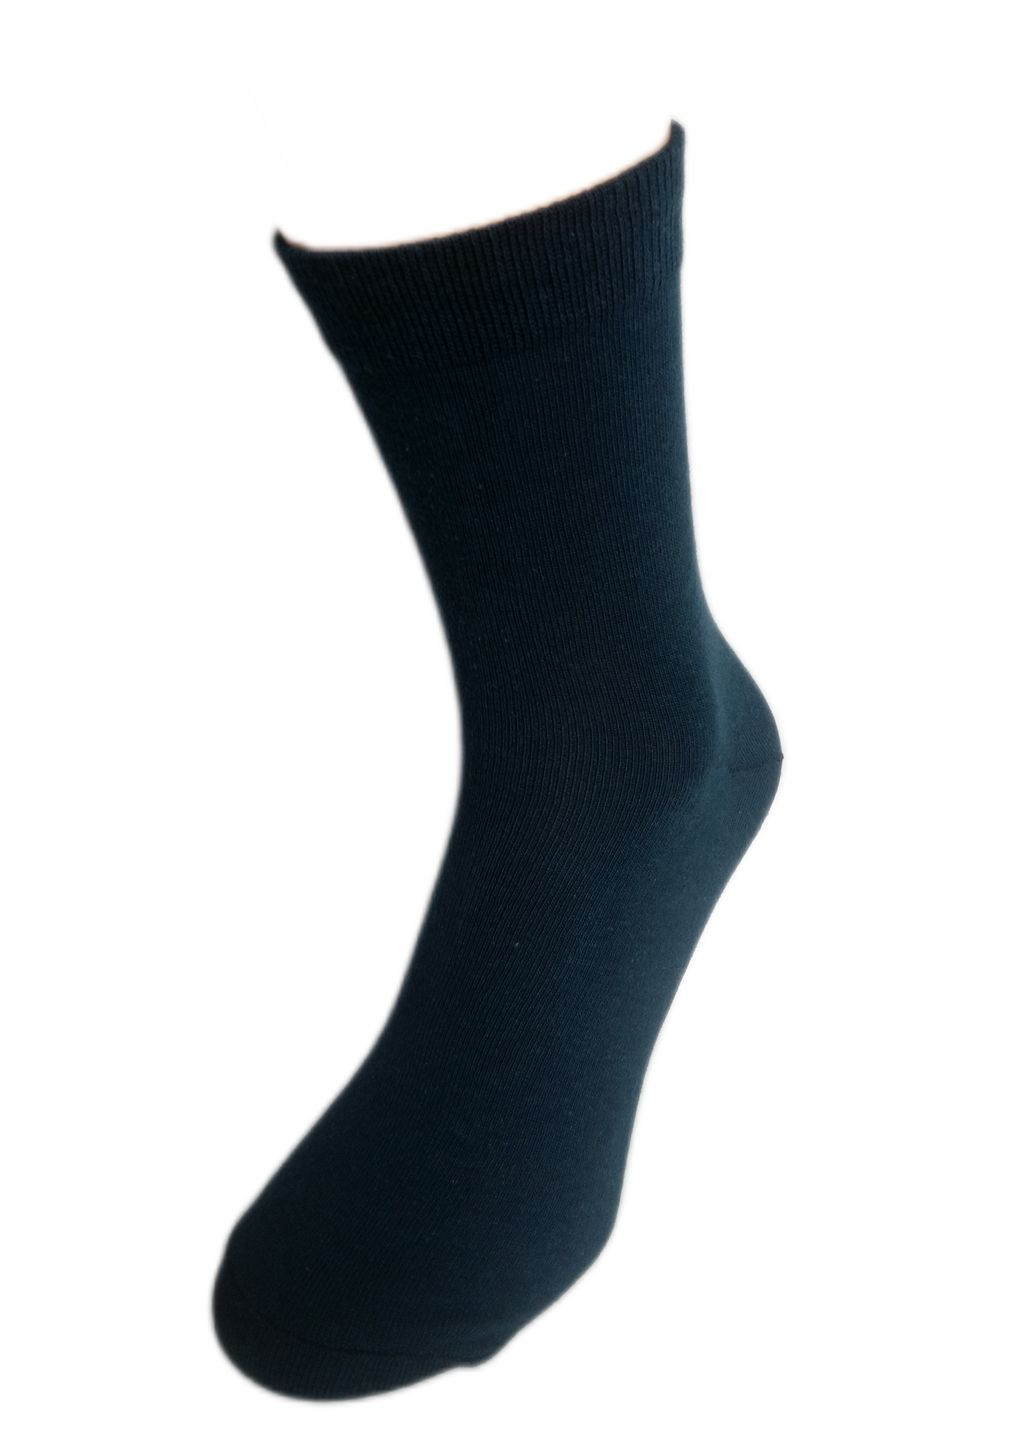 Шкарпетки чоловічі ТМ "Нова пара", 462 (в складі Акріл) НОВА ПАРА середня висота (260339151)